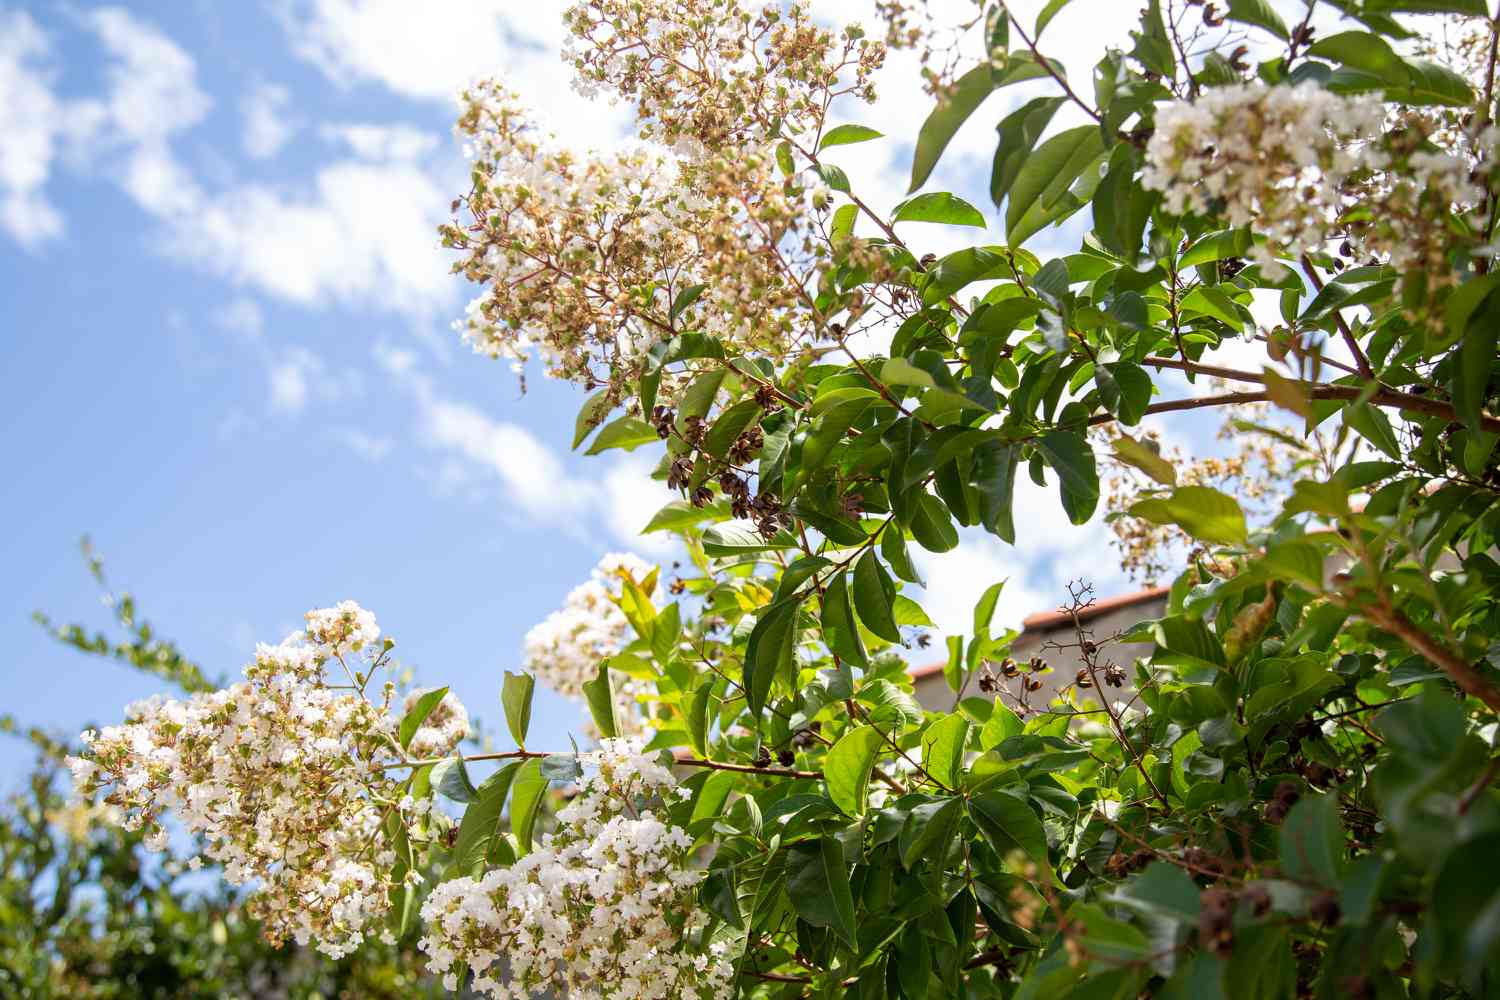 Tee-Olivenstrauch vor blauem Himmel mit winzigen weißen Blütenbüscheln an den Zweigen